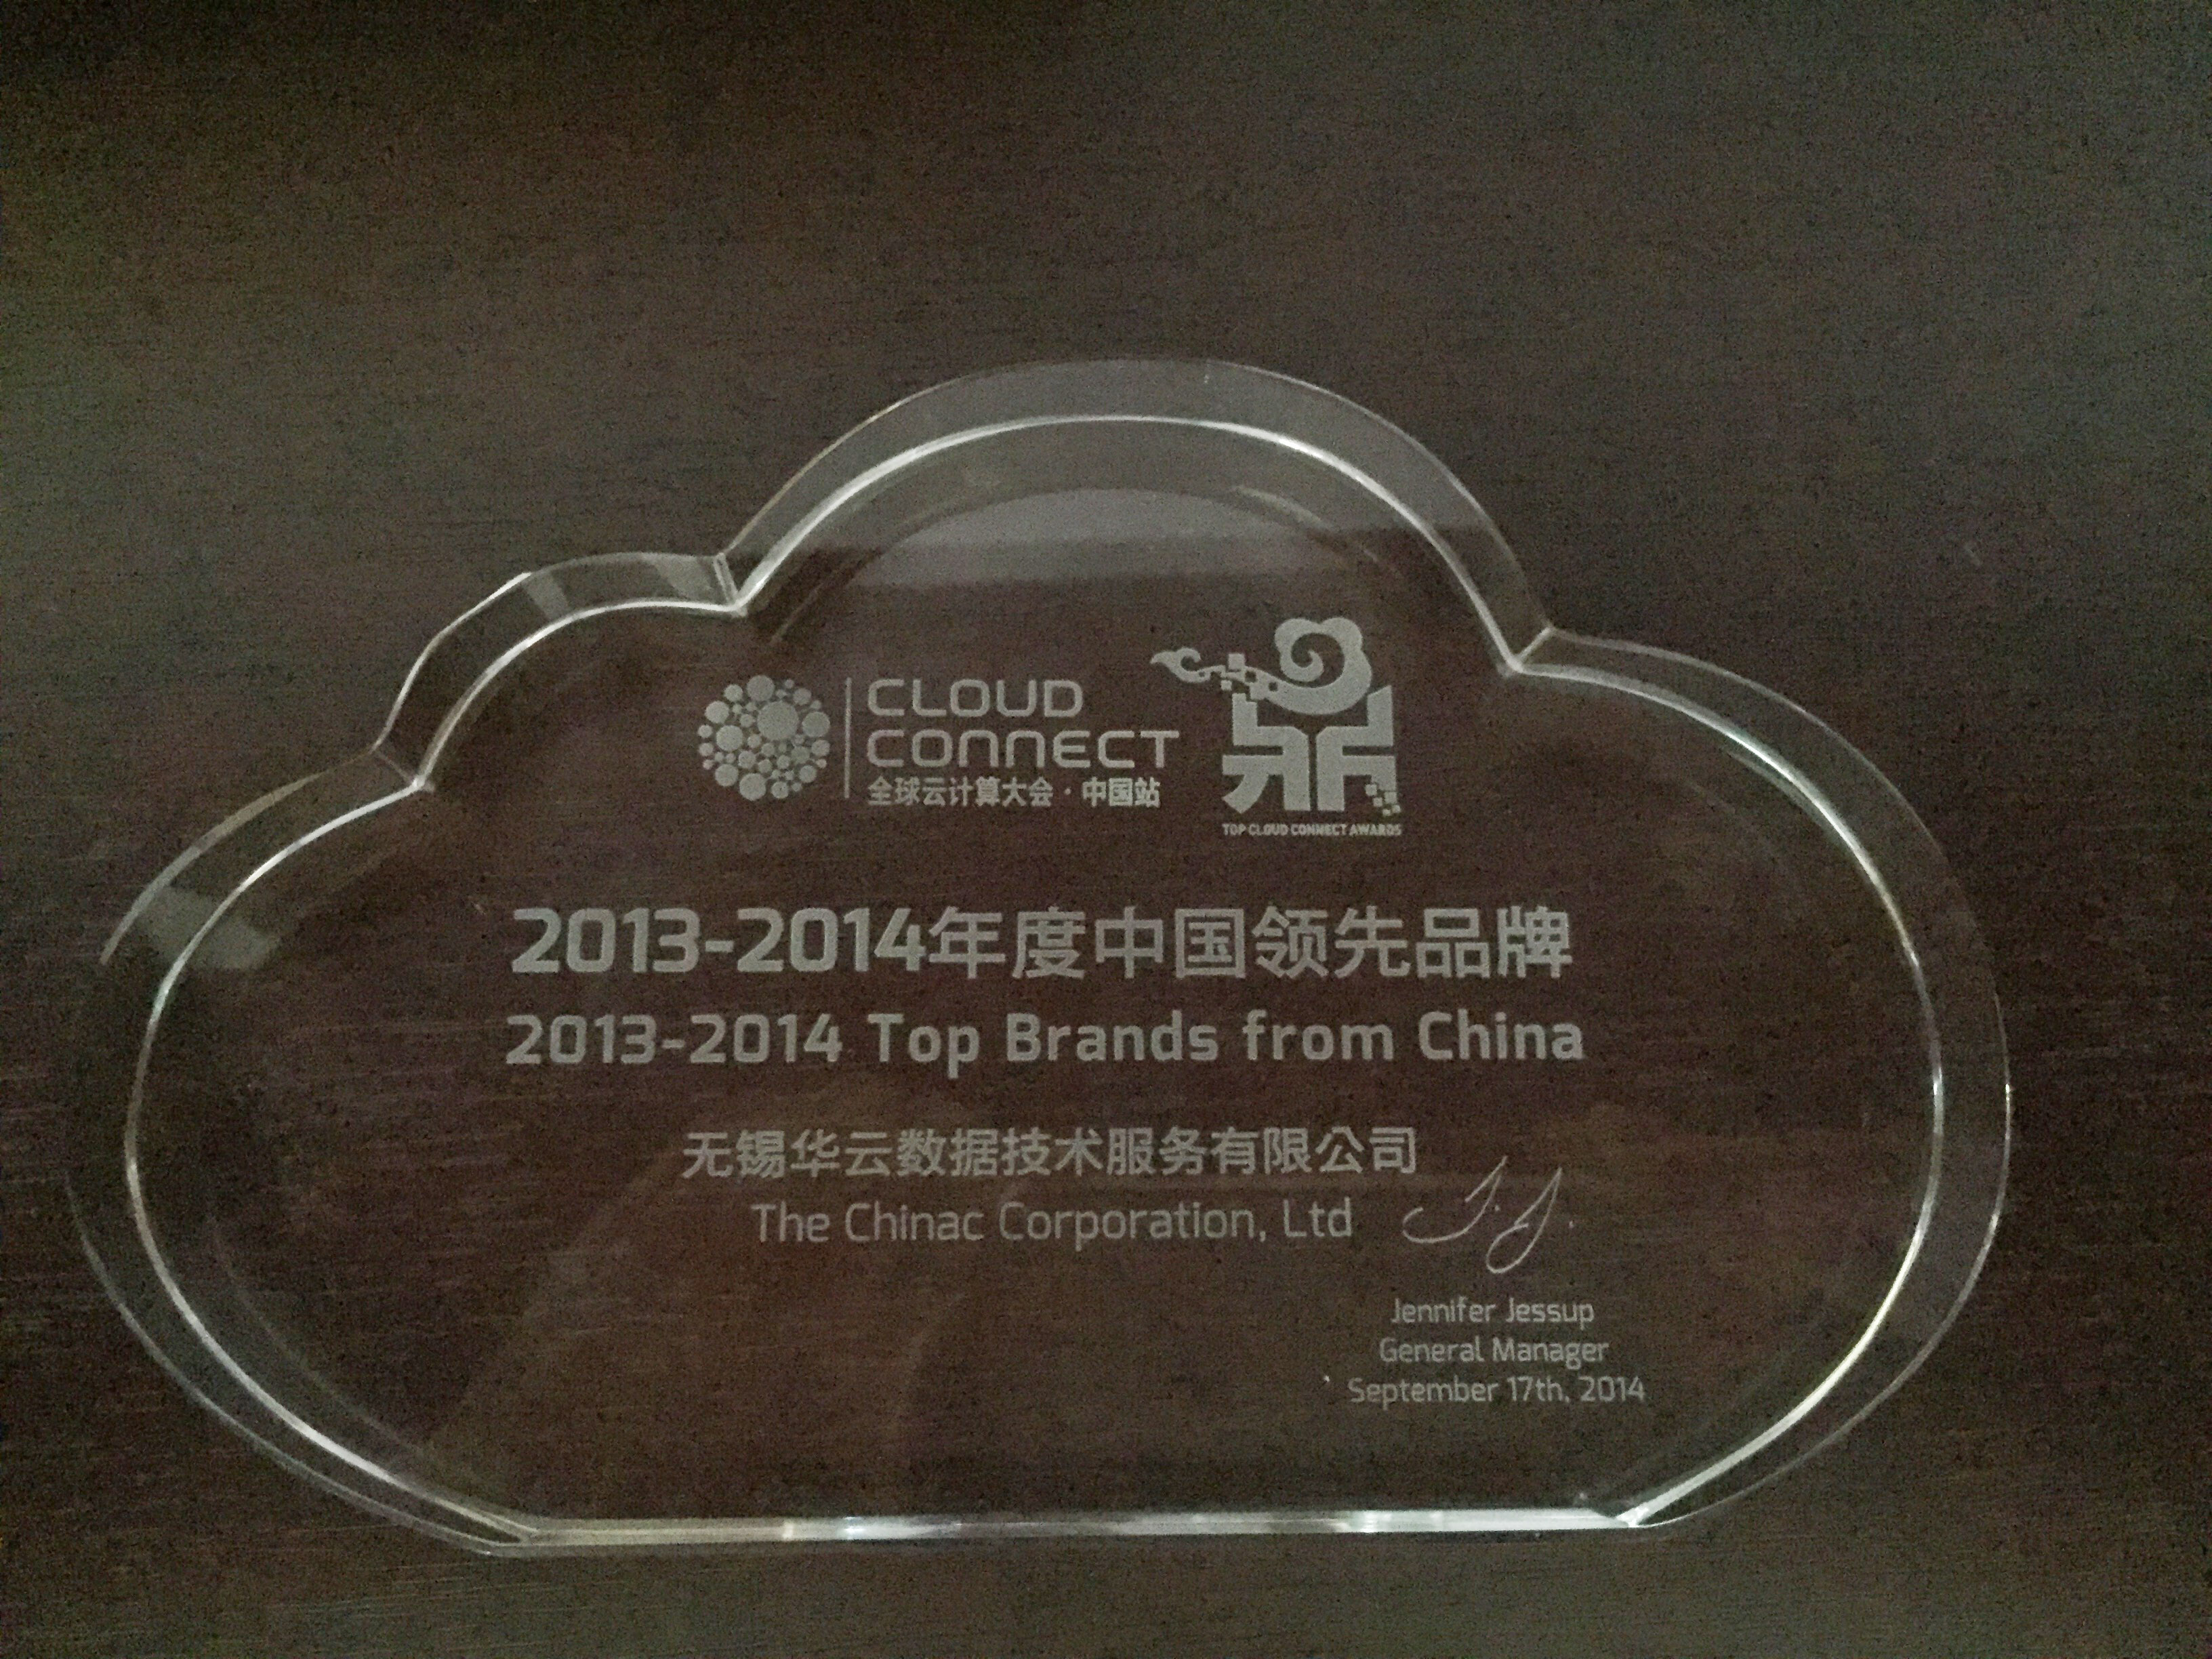 2013-2014年度中国领先品牌